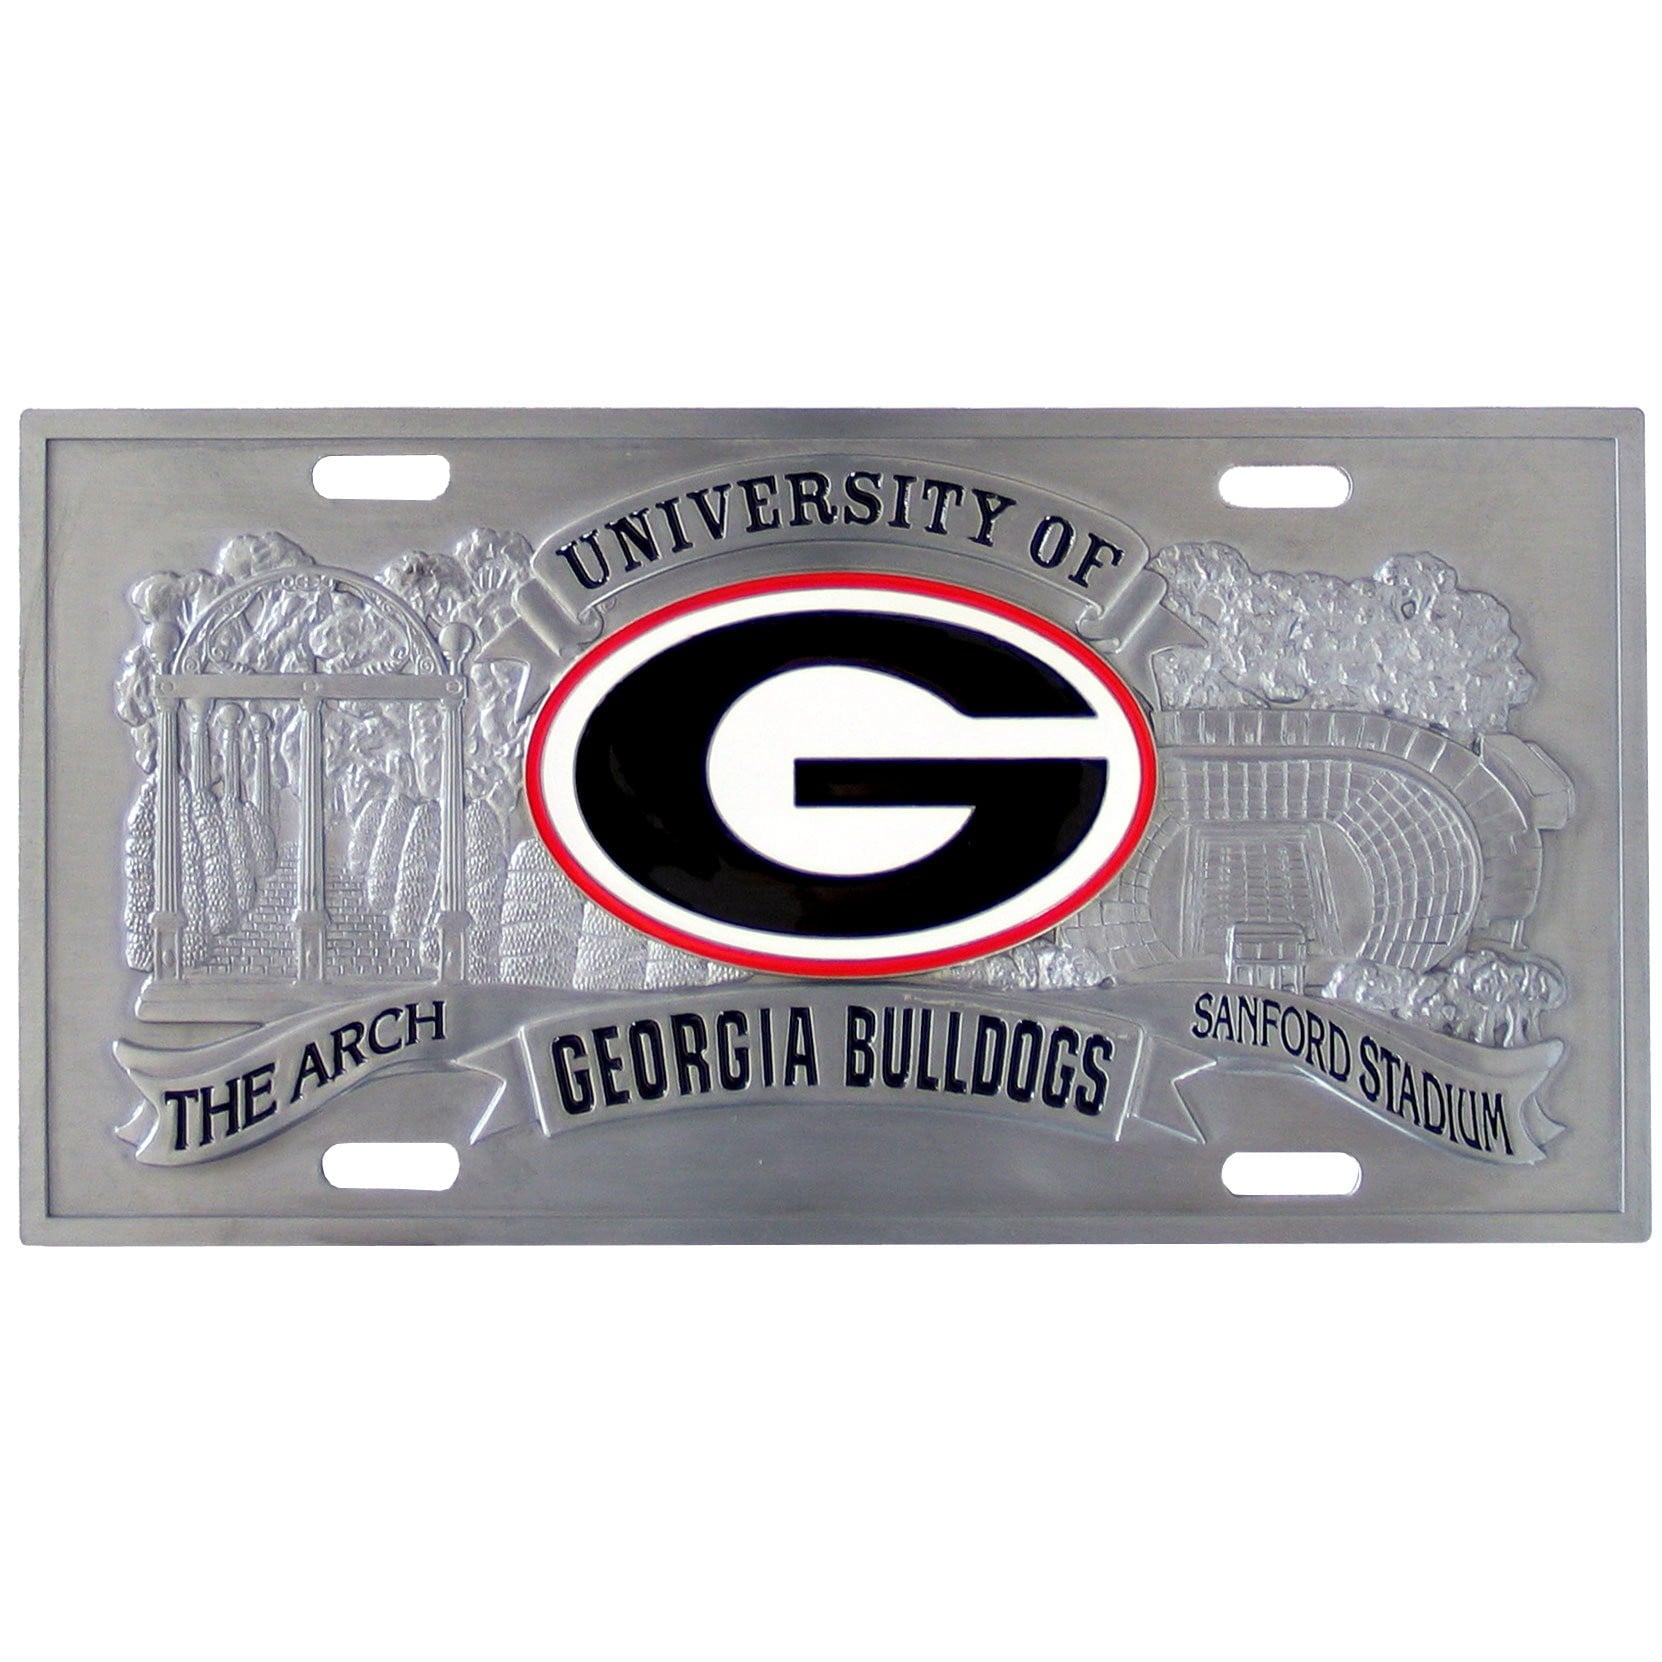 Georgia Bulldogs Collector's License Plate